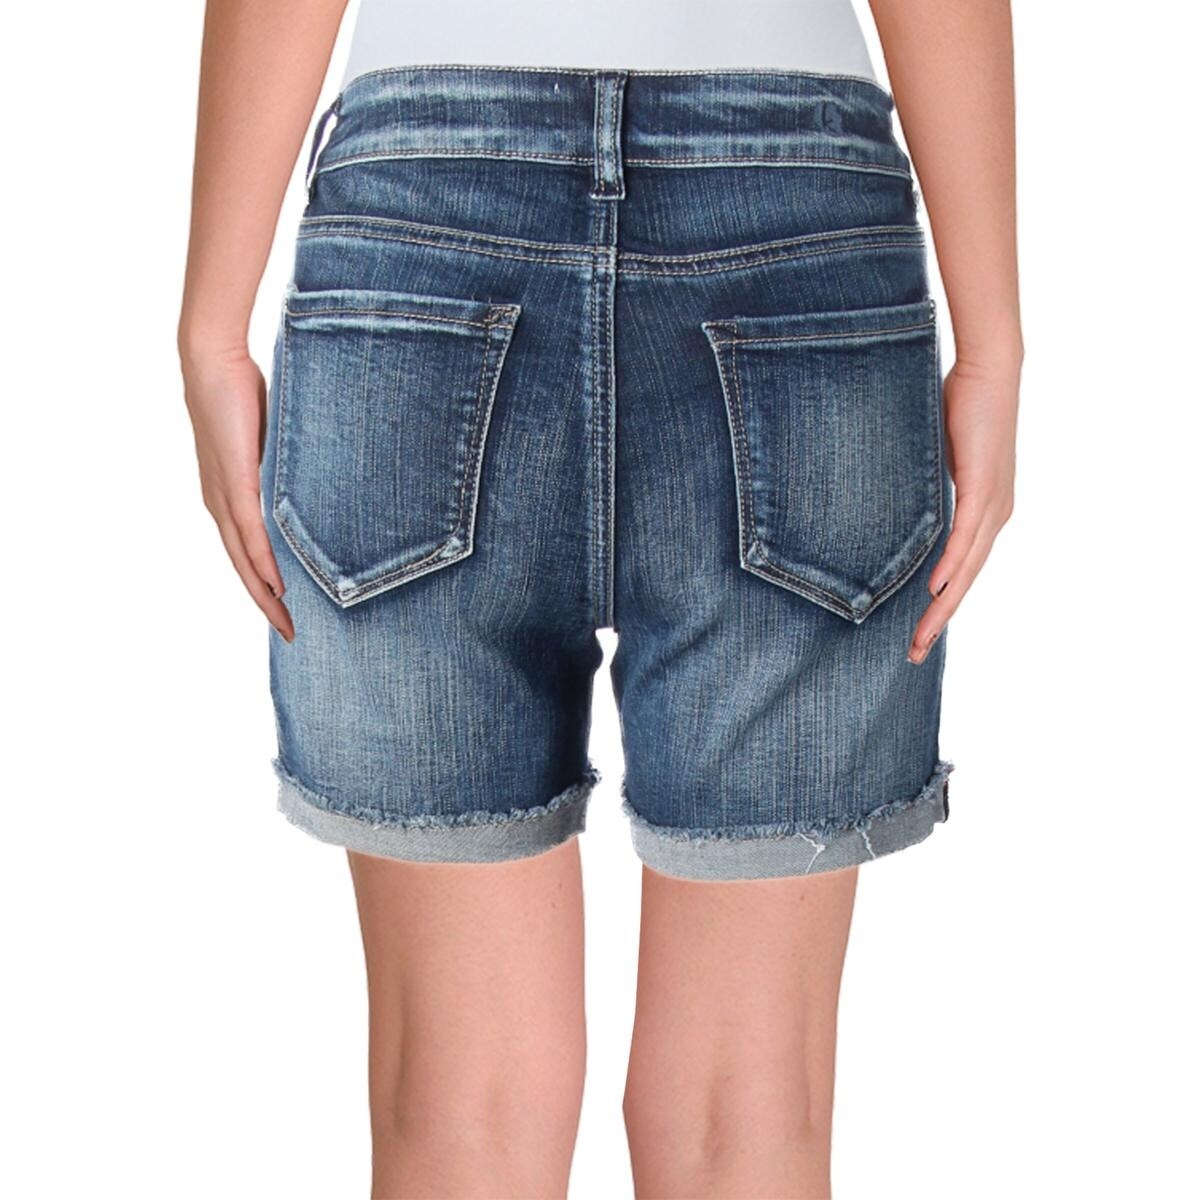 kensie jean shorts